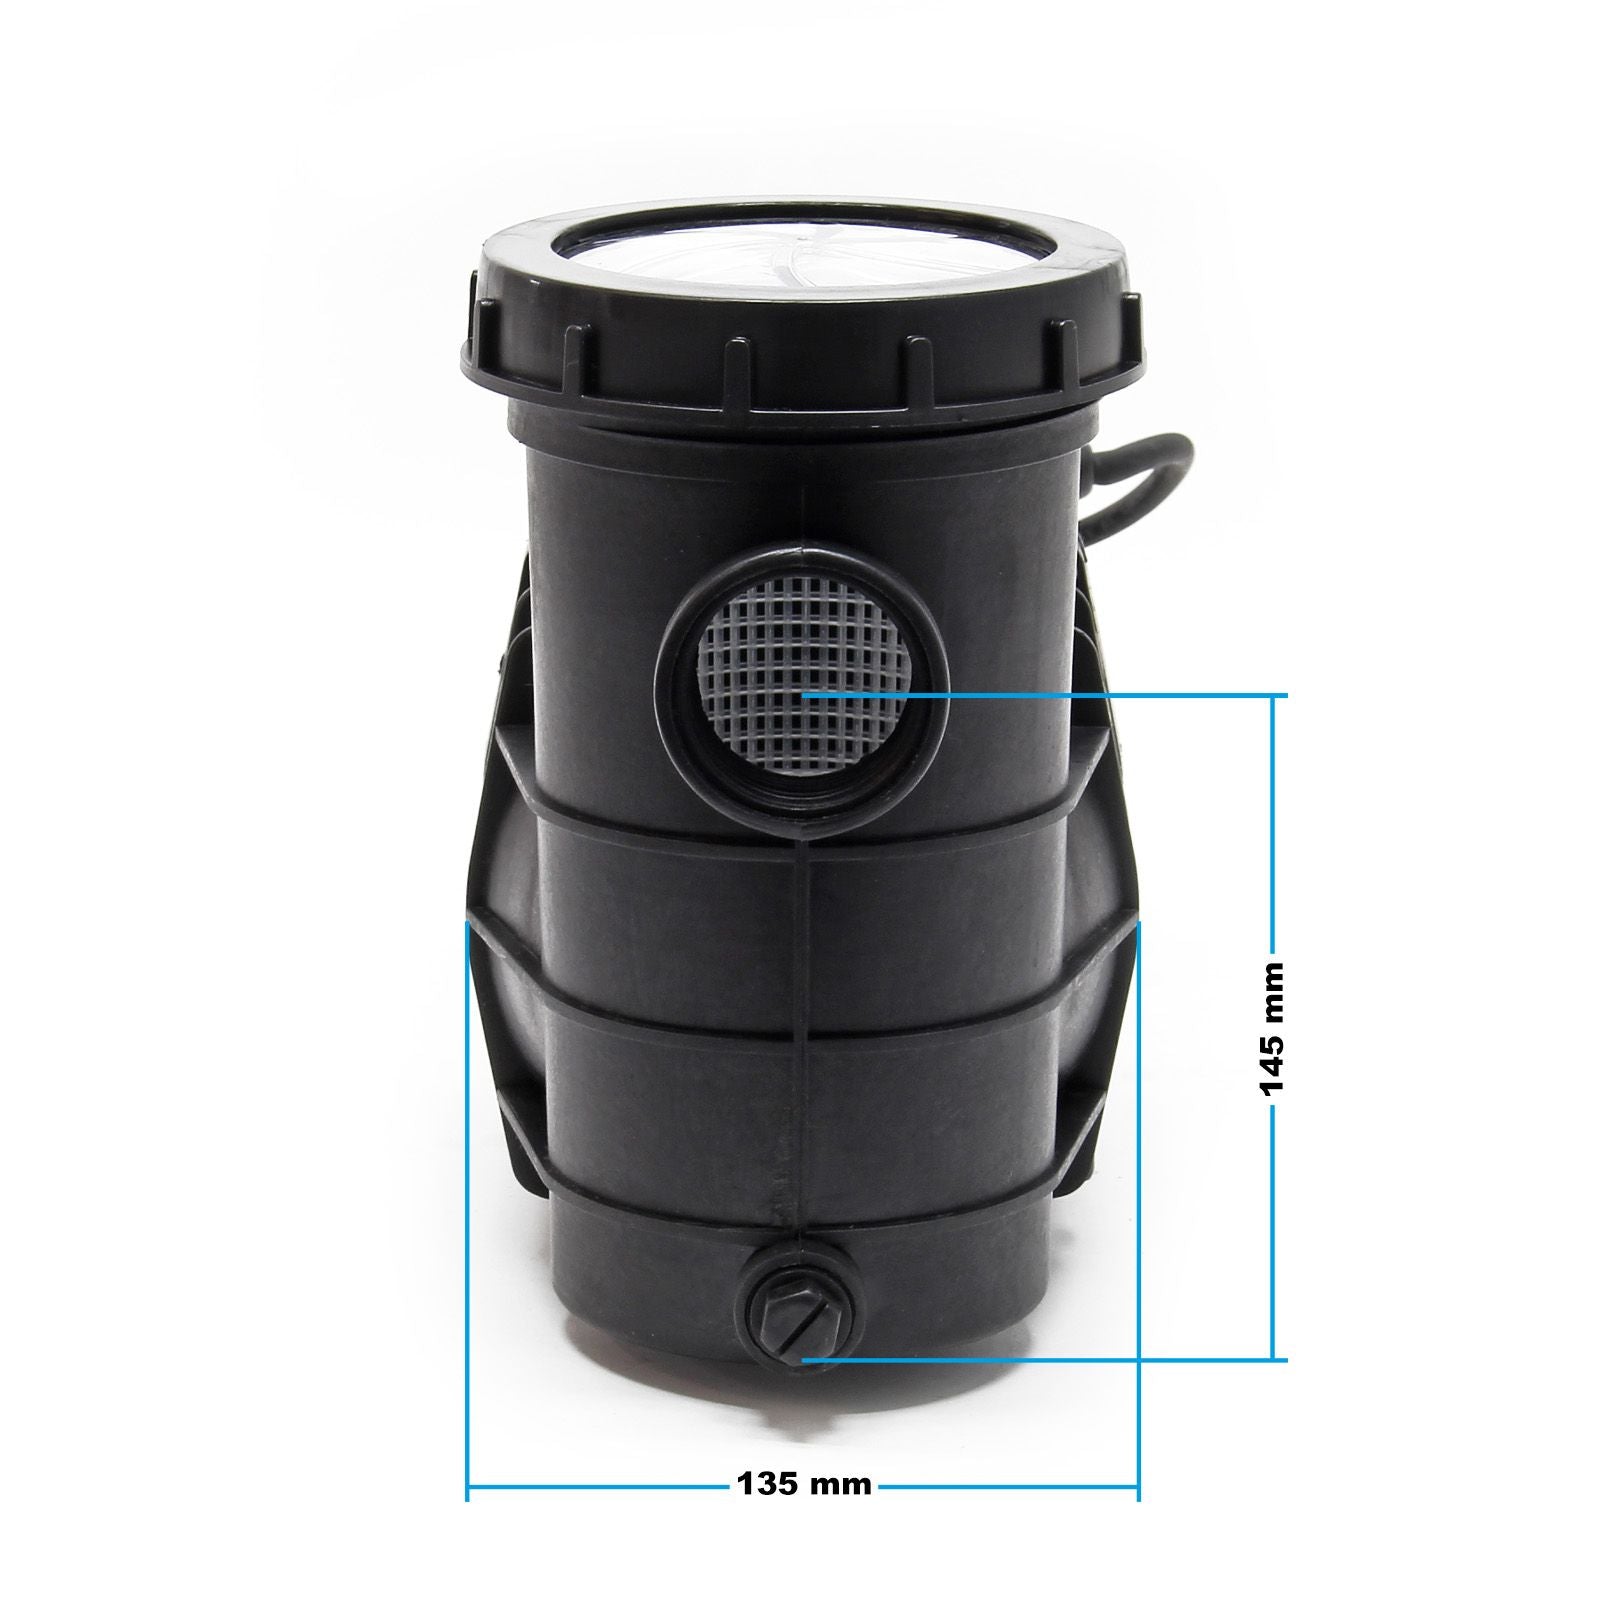 Sistem de filtrare cu filtru de nisip Pompa pentru piscina HZS-300